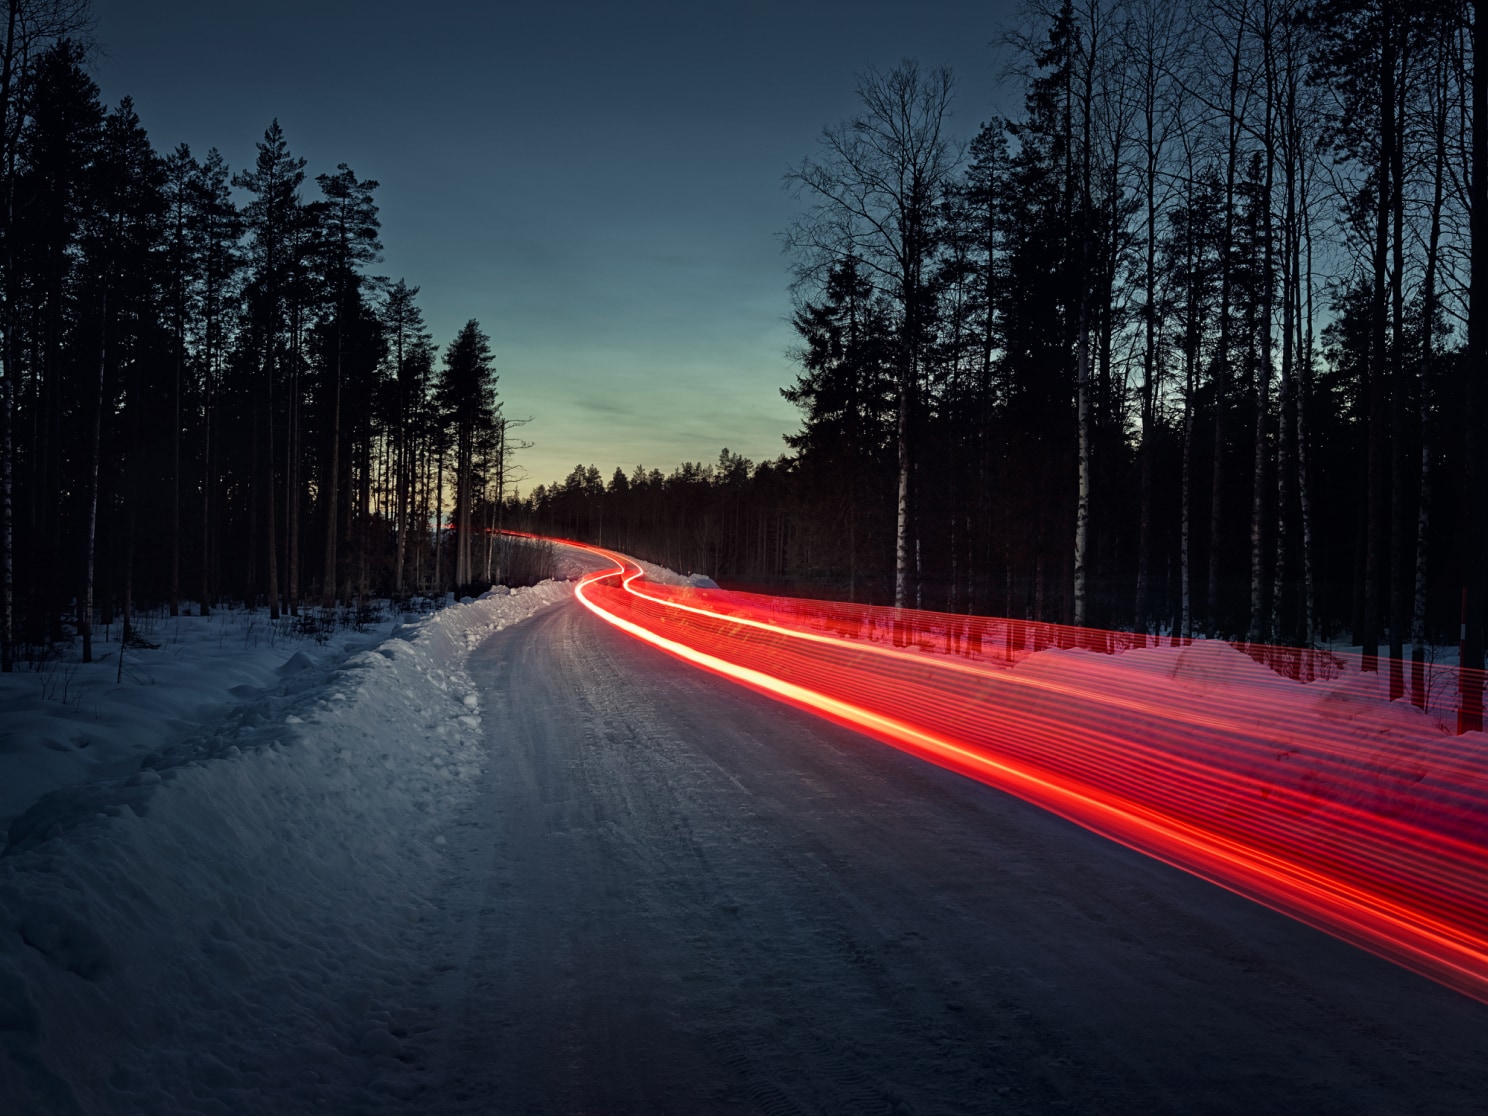 En time-delay-bild av vad som ser ut som ett spår av röda baklyktor på en isig väg.